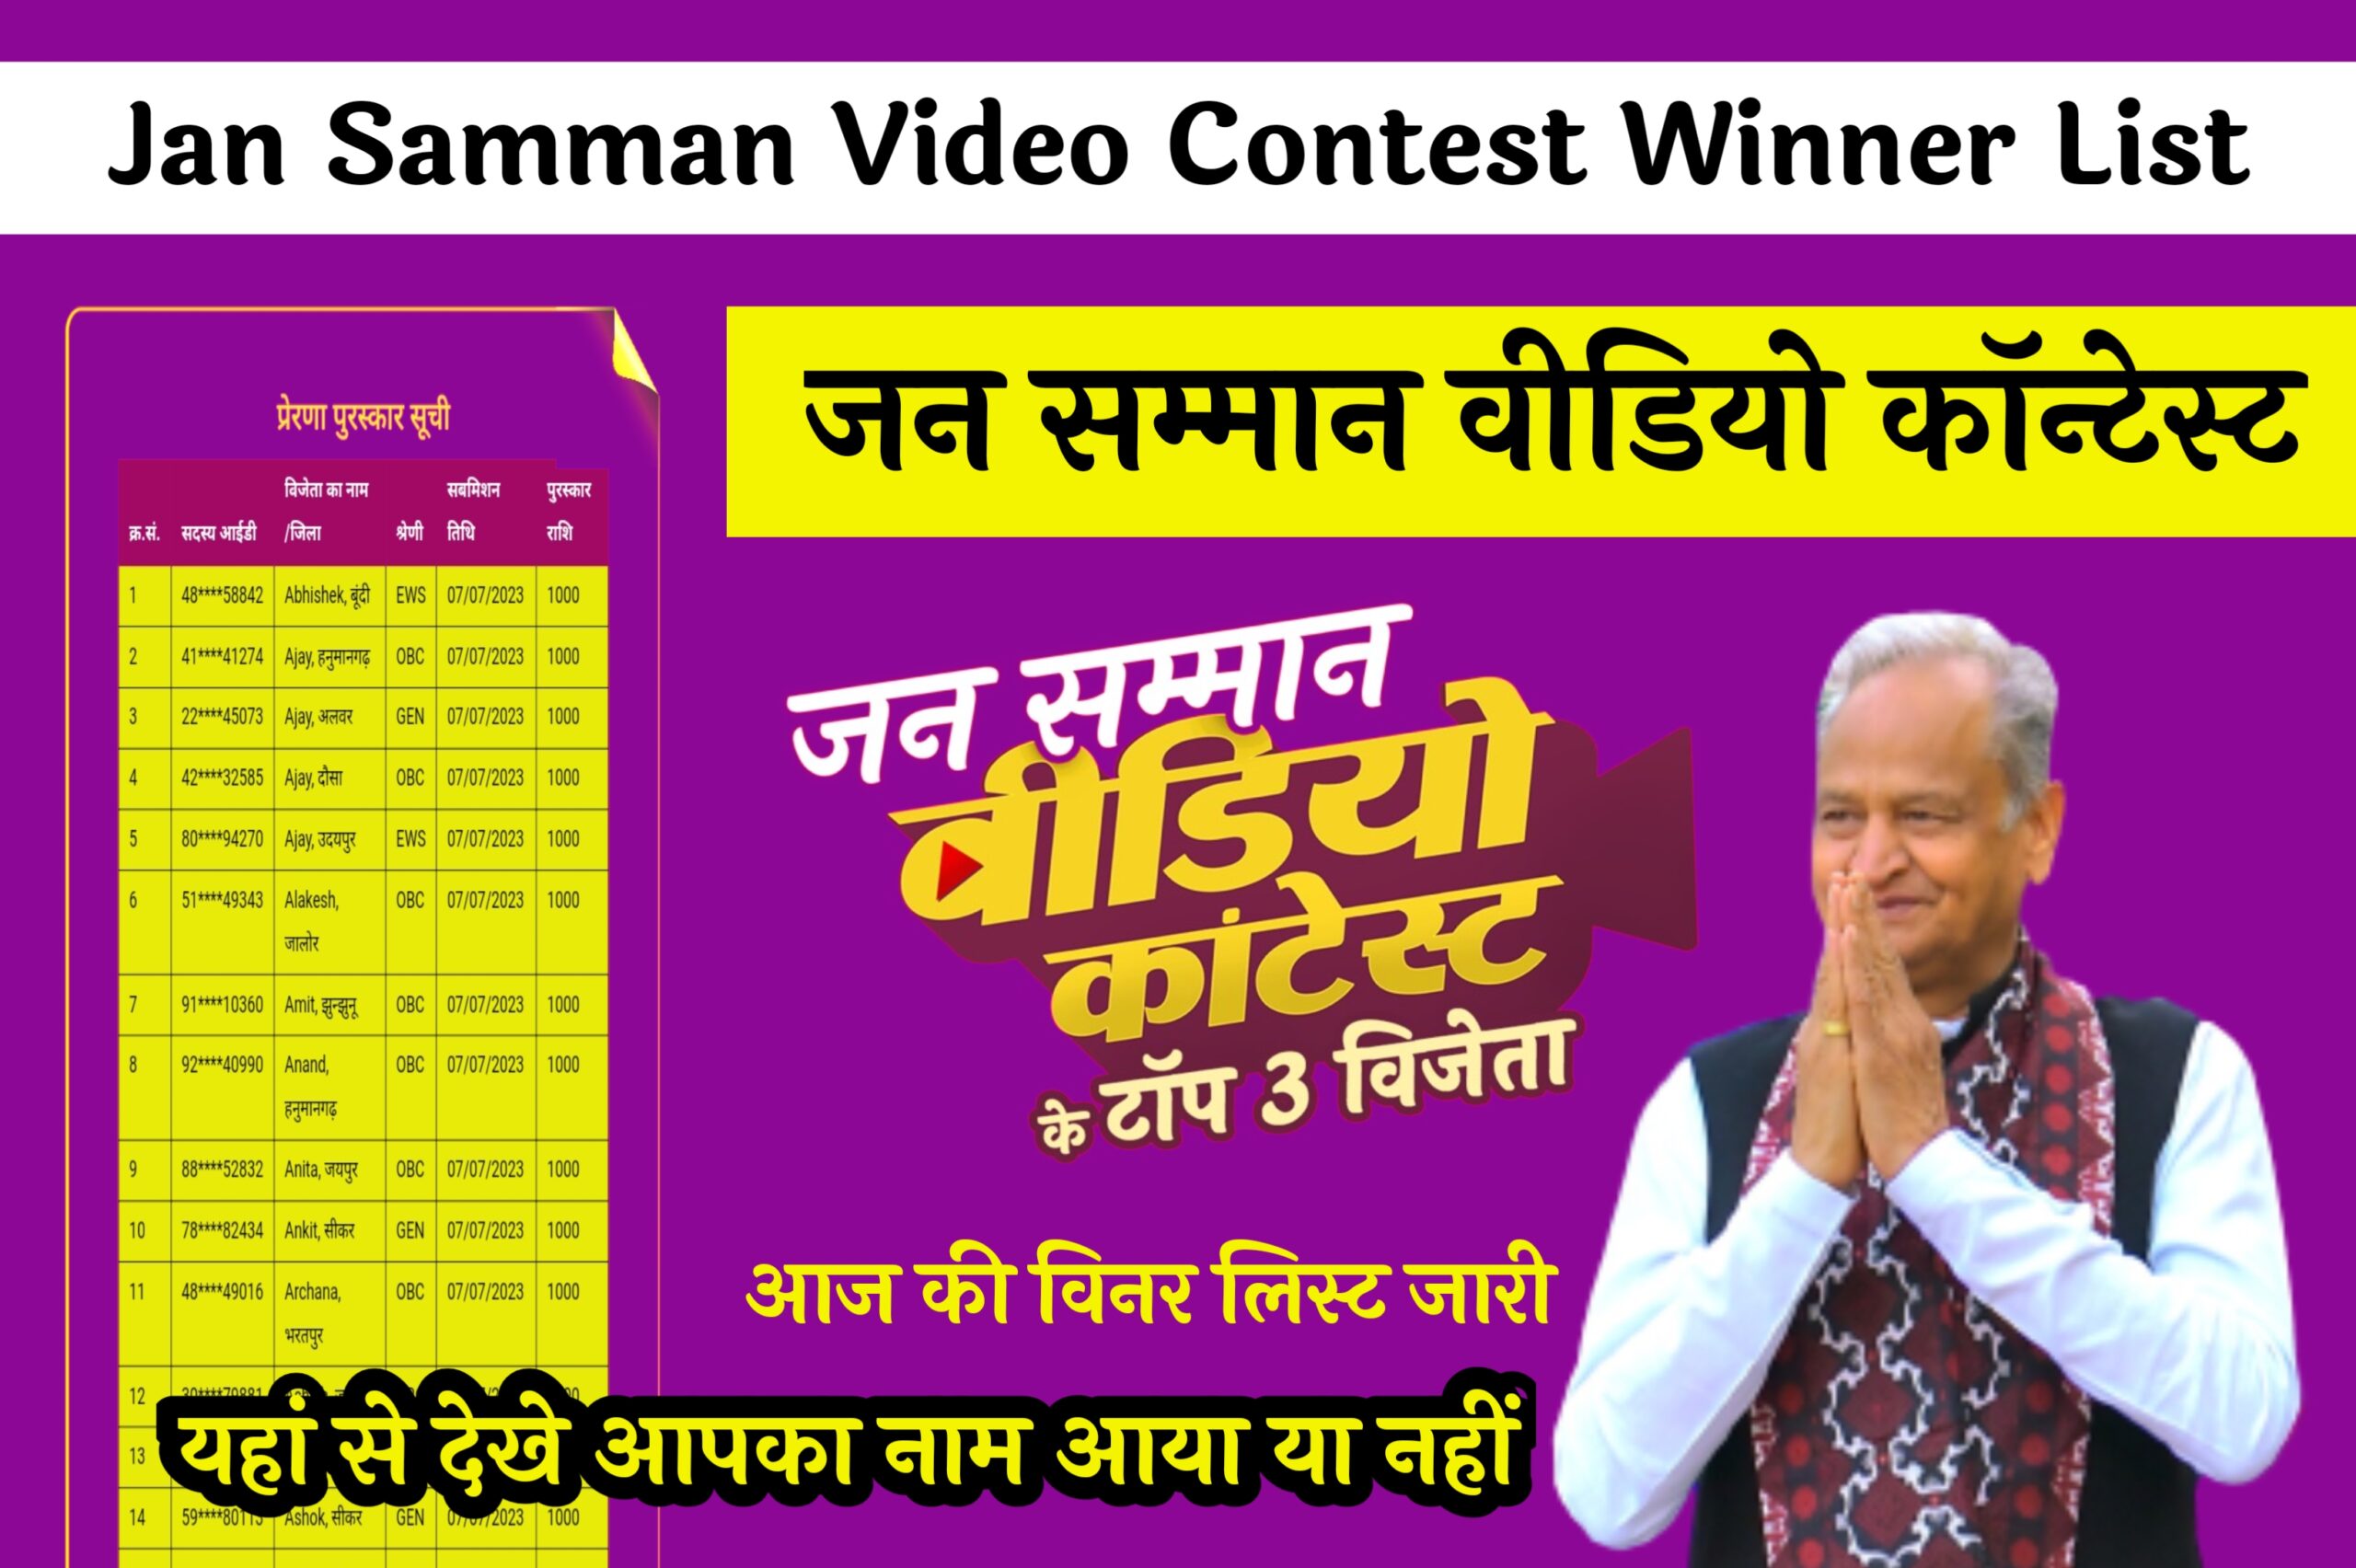 Jan Samman Video Contest Winner List जन सम्मान वीडियो कॉन्टेस्ट , आज की विनर लिस्ट जारी , यहां से देखे आपका नाम आया या नहीं